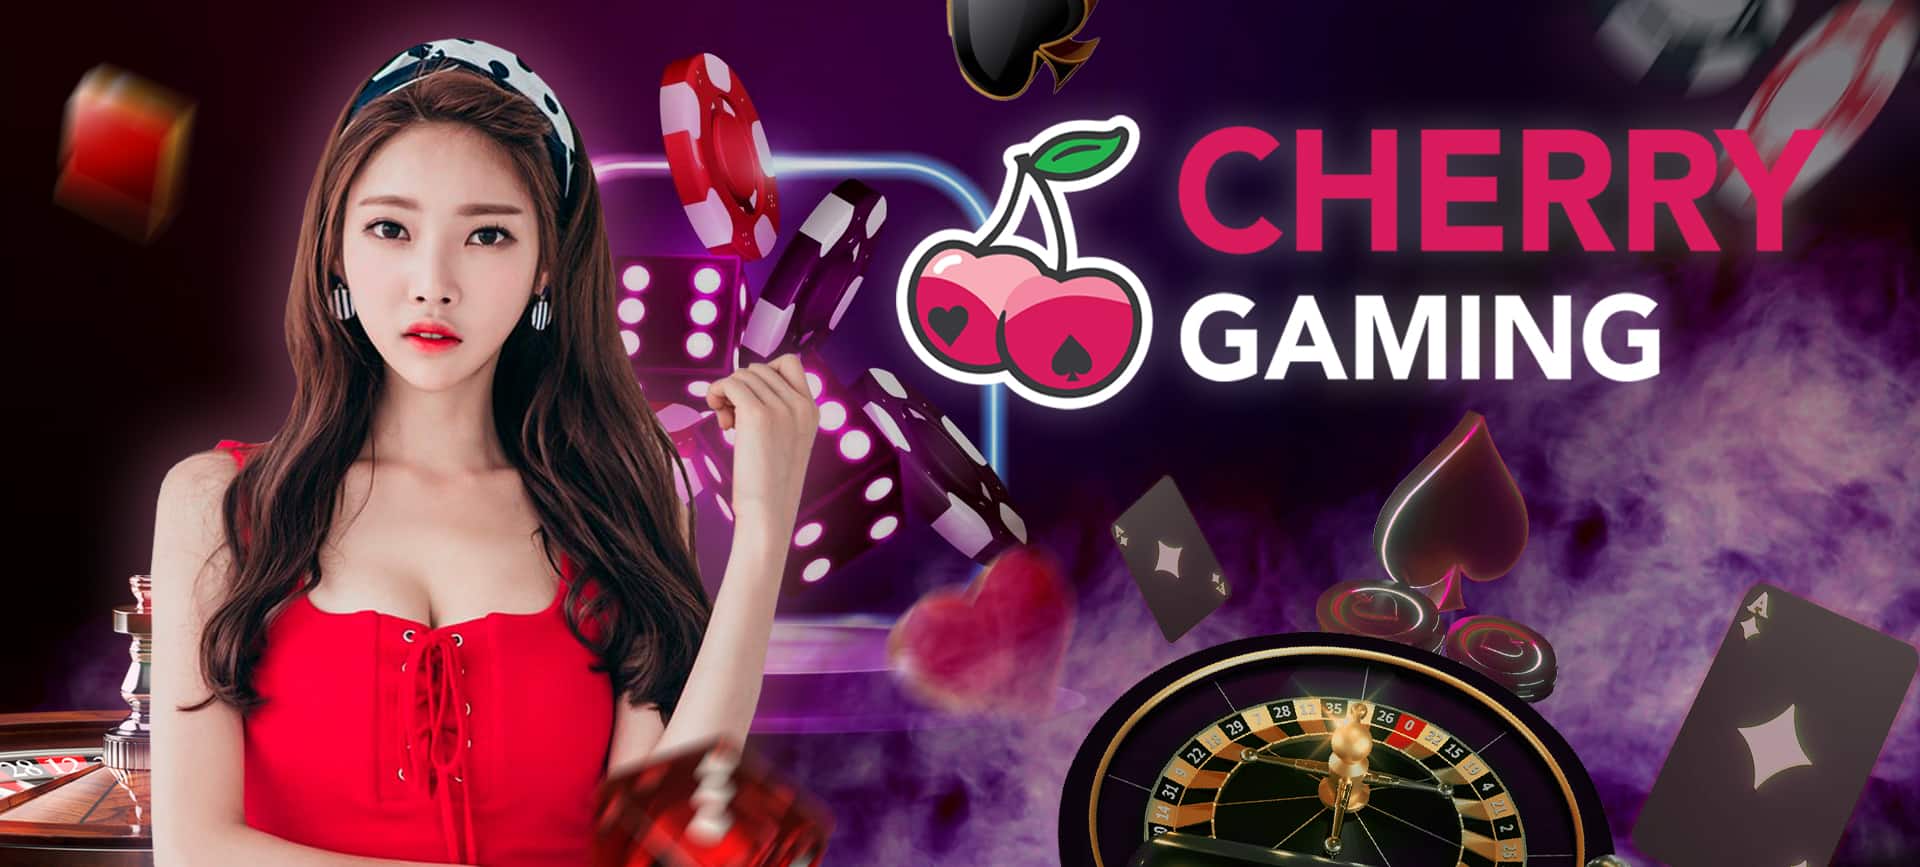 ค่ายเกมพนันออนไลน์ Cherry gaming casino เดิมพันง่าย จ่ายหนัก กำไรสูง 